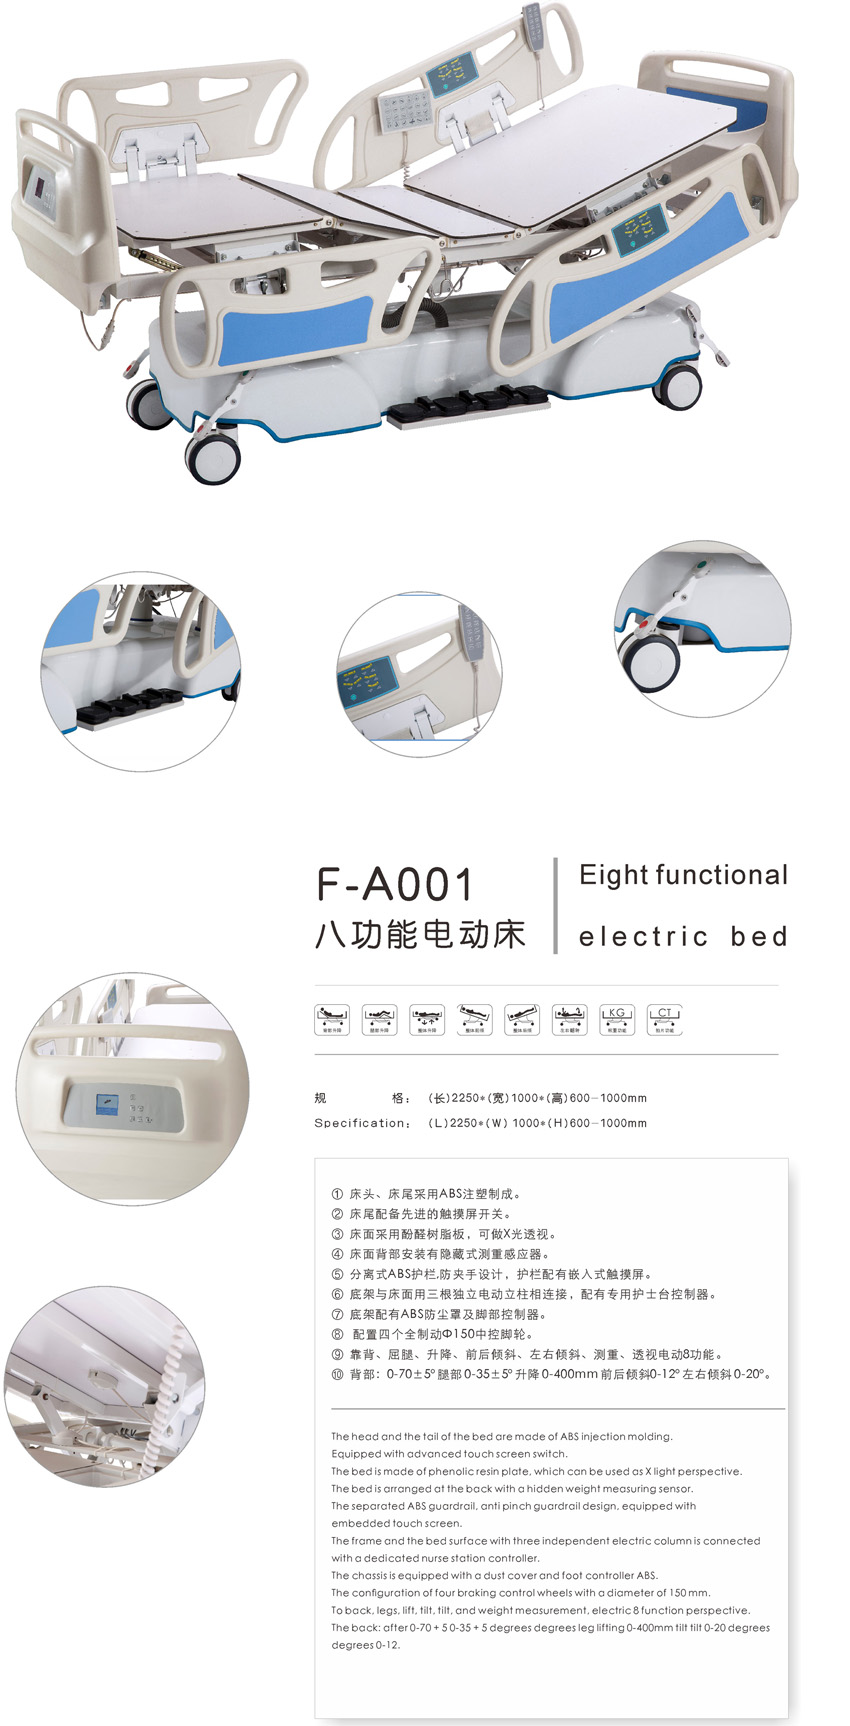 八功能电动床  F-A001